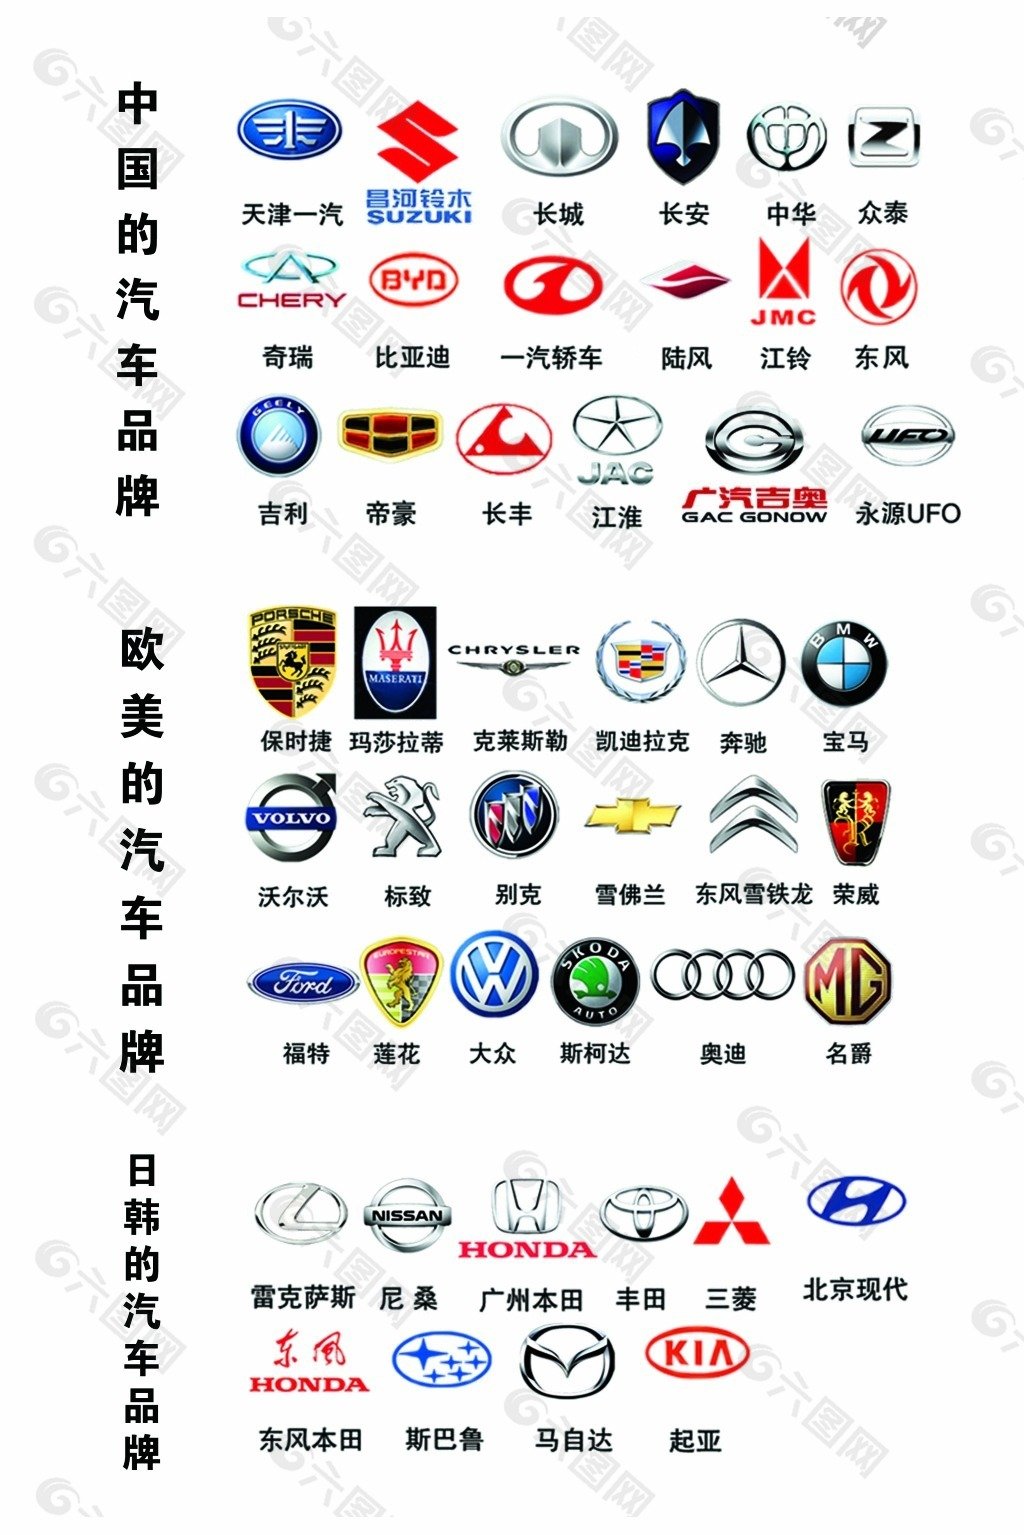 Значки китайских марок авто. Марки автомобилей. Значки авто. Марки автомобилей со значками. Марки китайских автомобилей со значками.